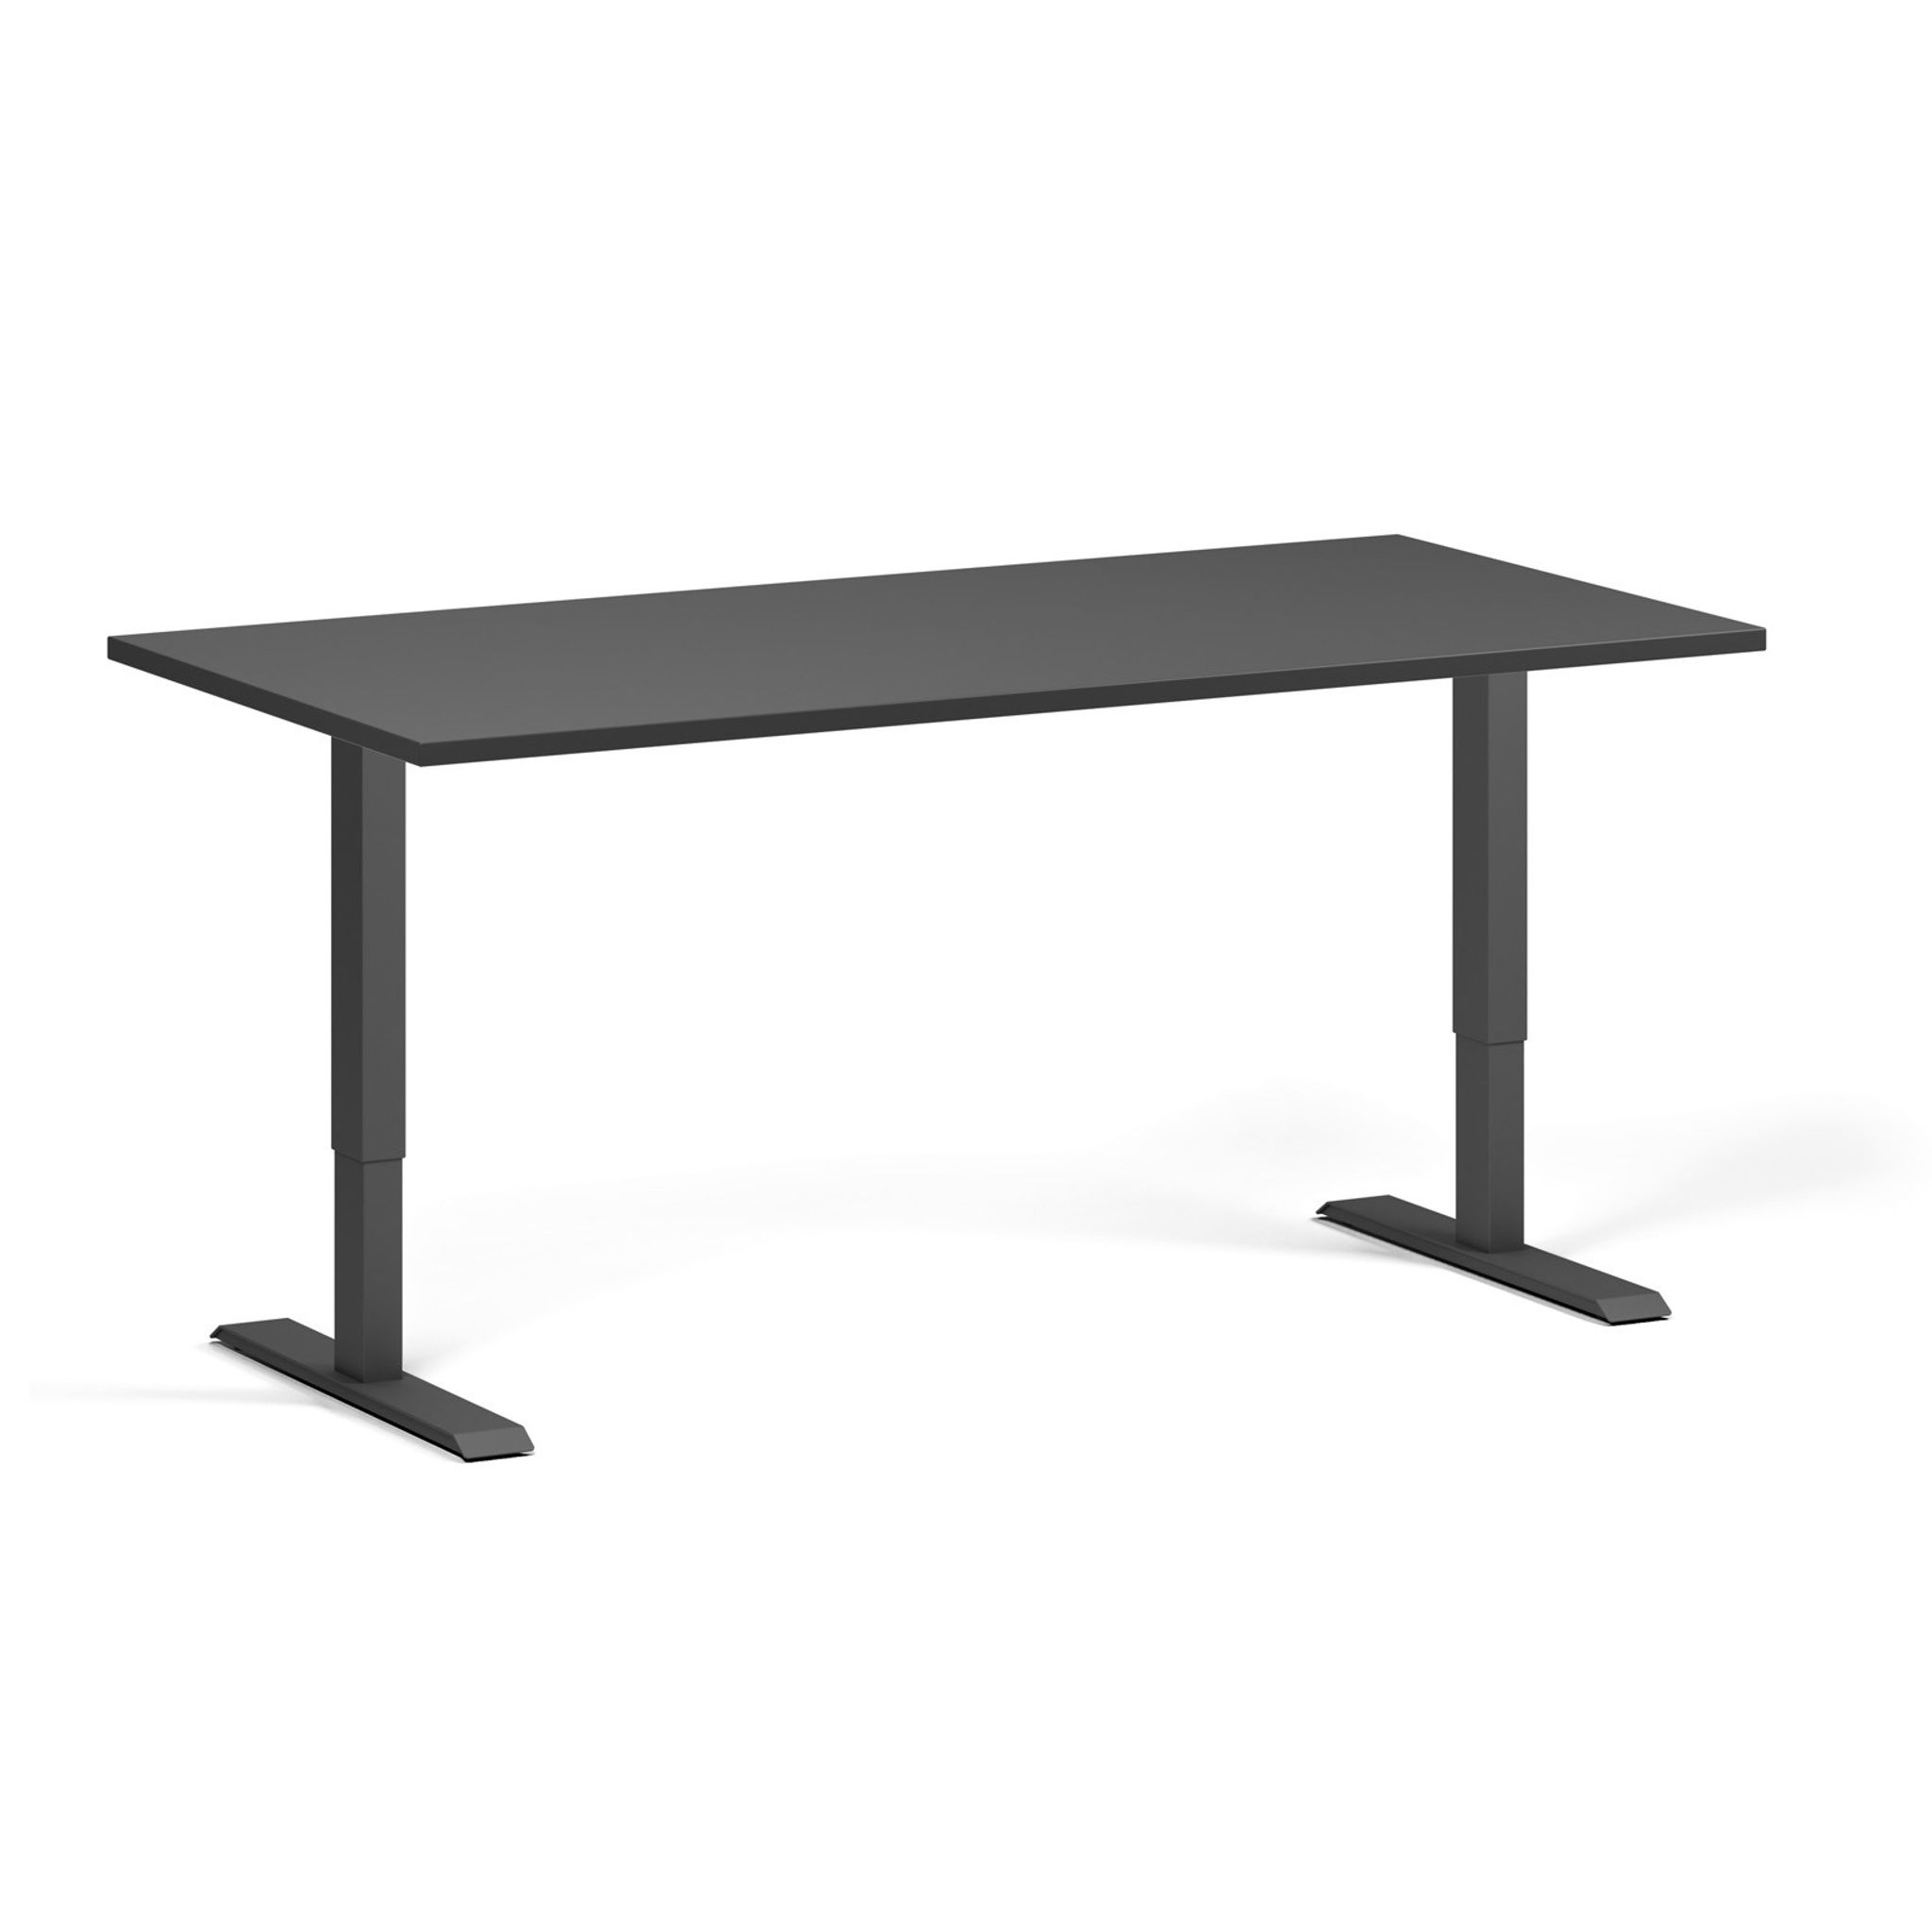 Výškově nastavitelný stůl, 2 motory, 745-1215 mm, deska 1600x800 mm, černá podnož, grafit